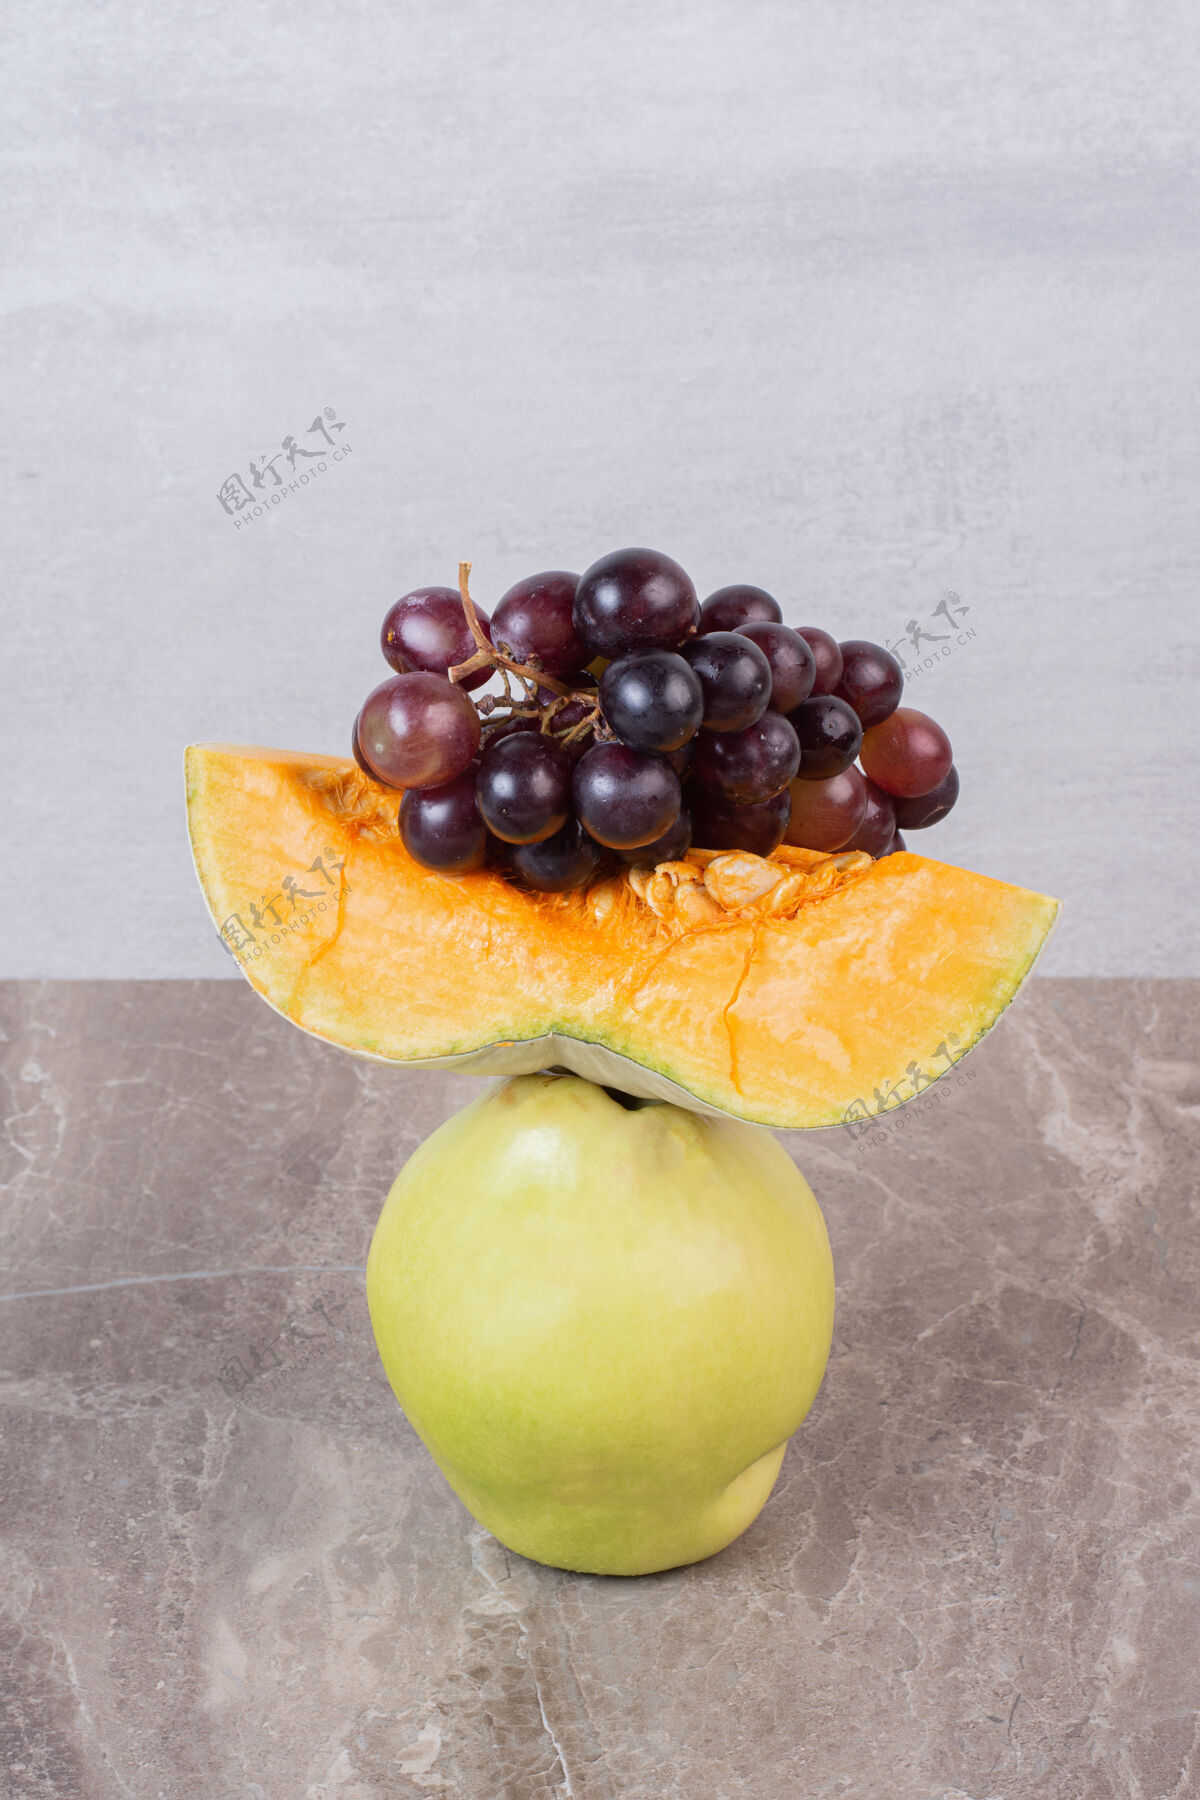 切片在大理石桌上放一片南瓜 木瓜和葡萄水果木瓜成熟